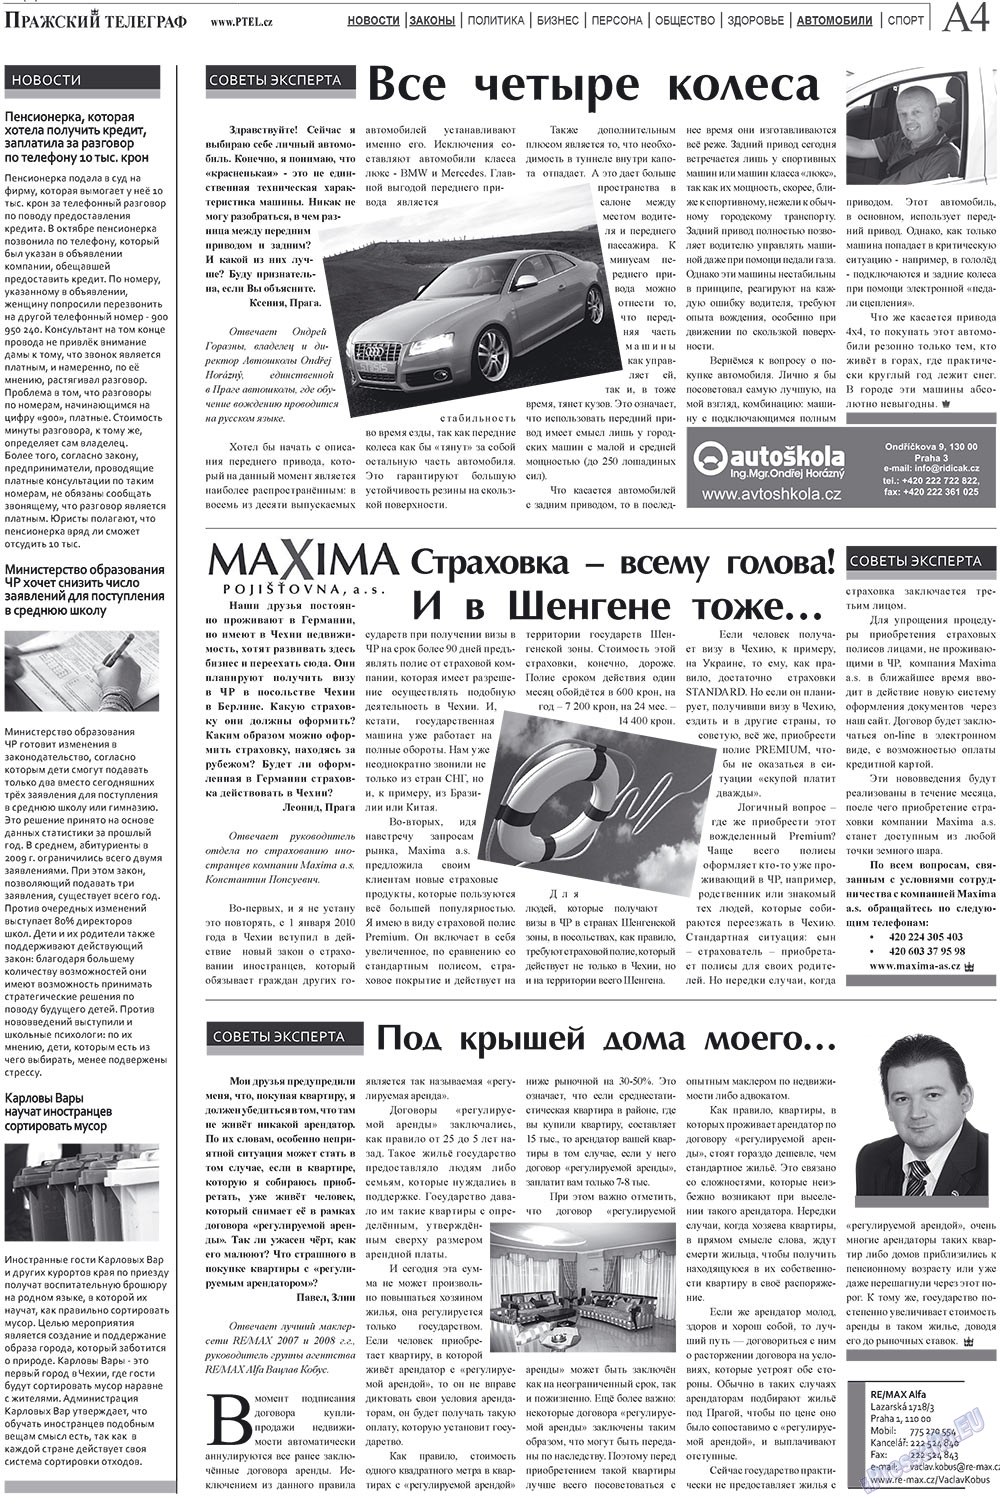 Пражский телеграф (газета). 2010 год, номер 4, стр. 4